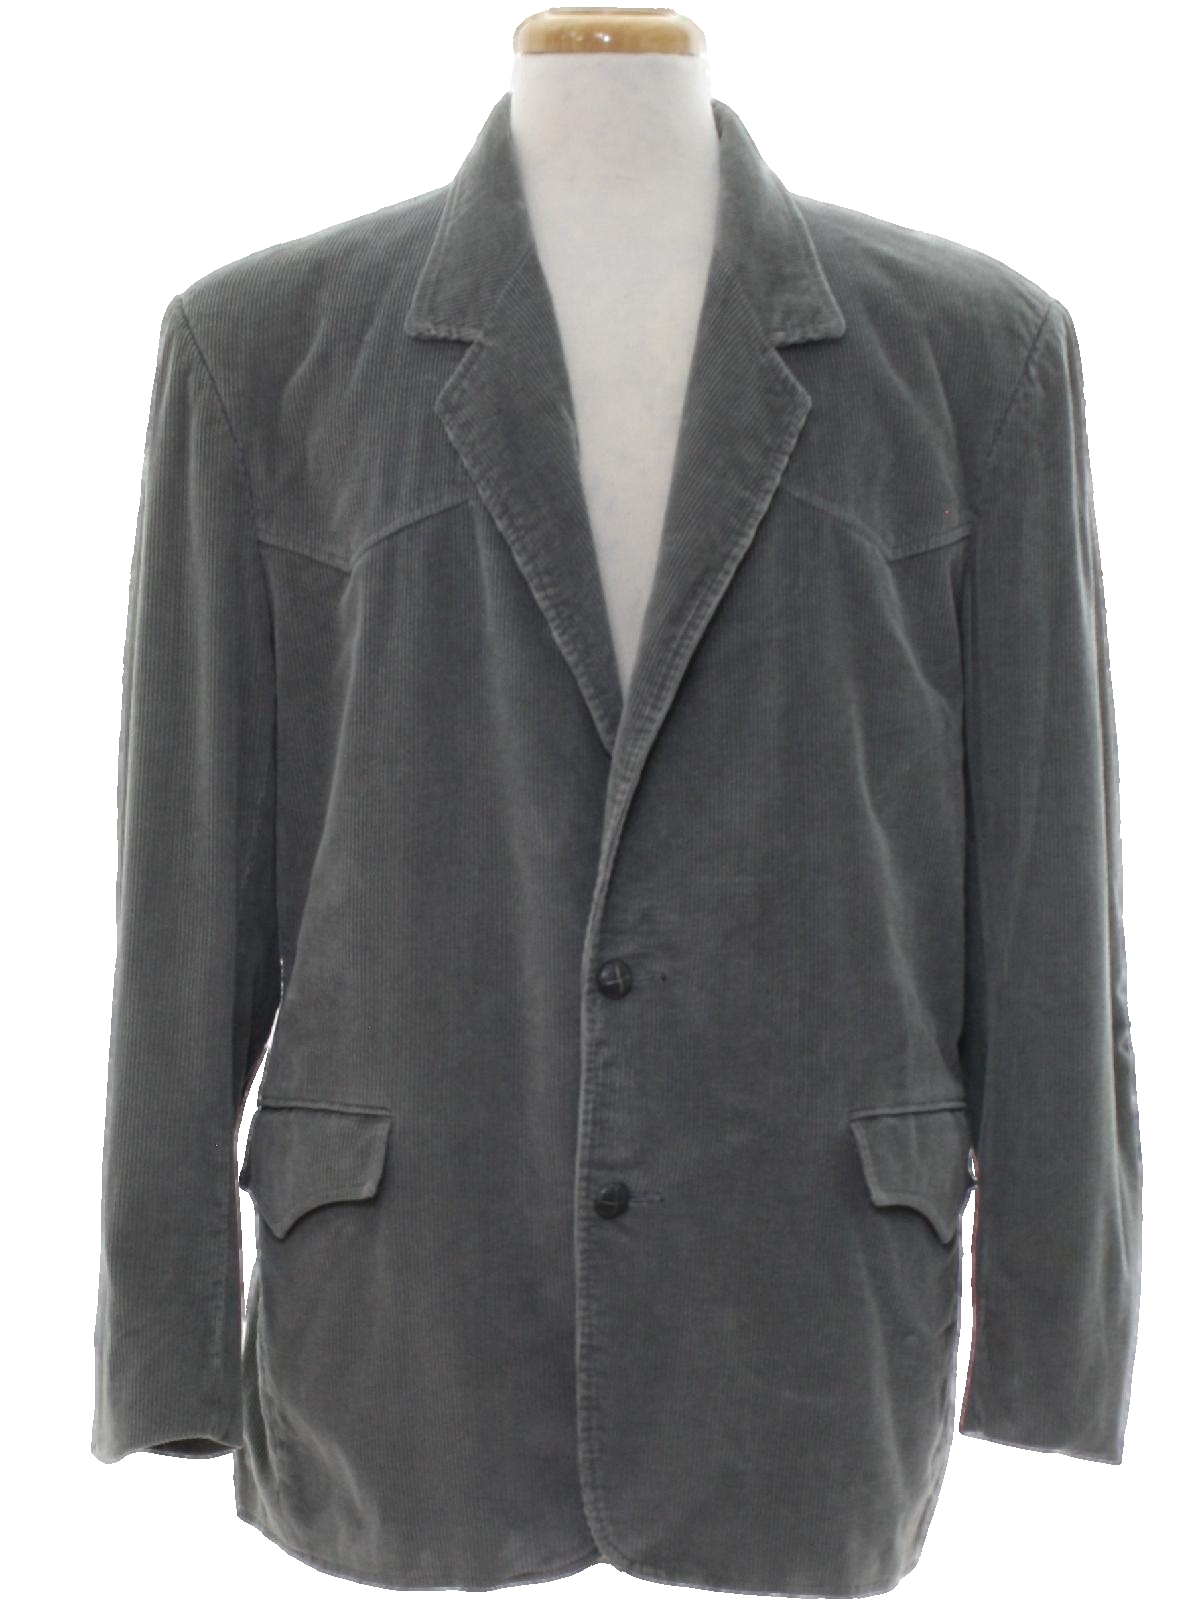 Vintage Pioneer Wear 70's Jacket: Late 70s or Early 80s -Pioneer Wear ...